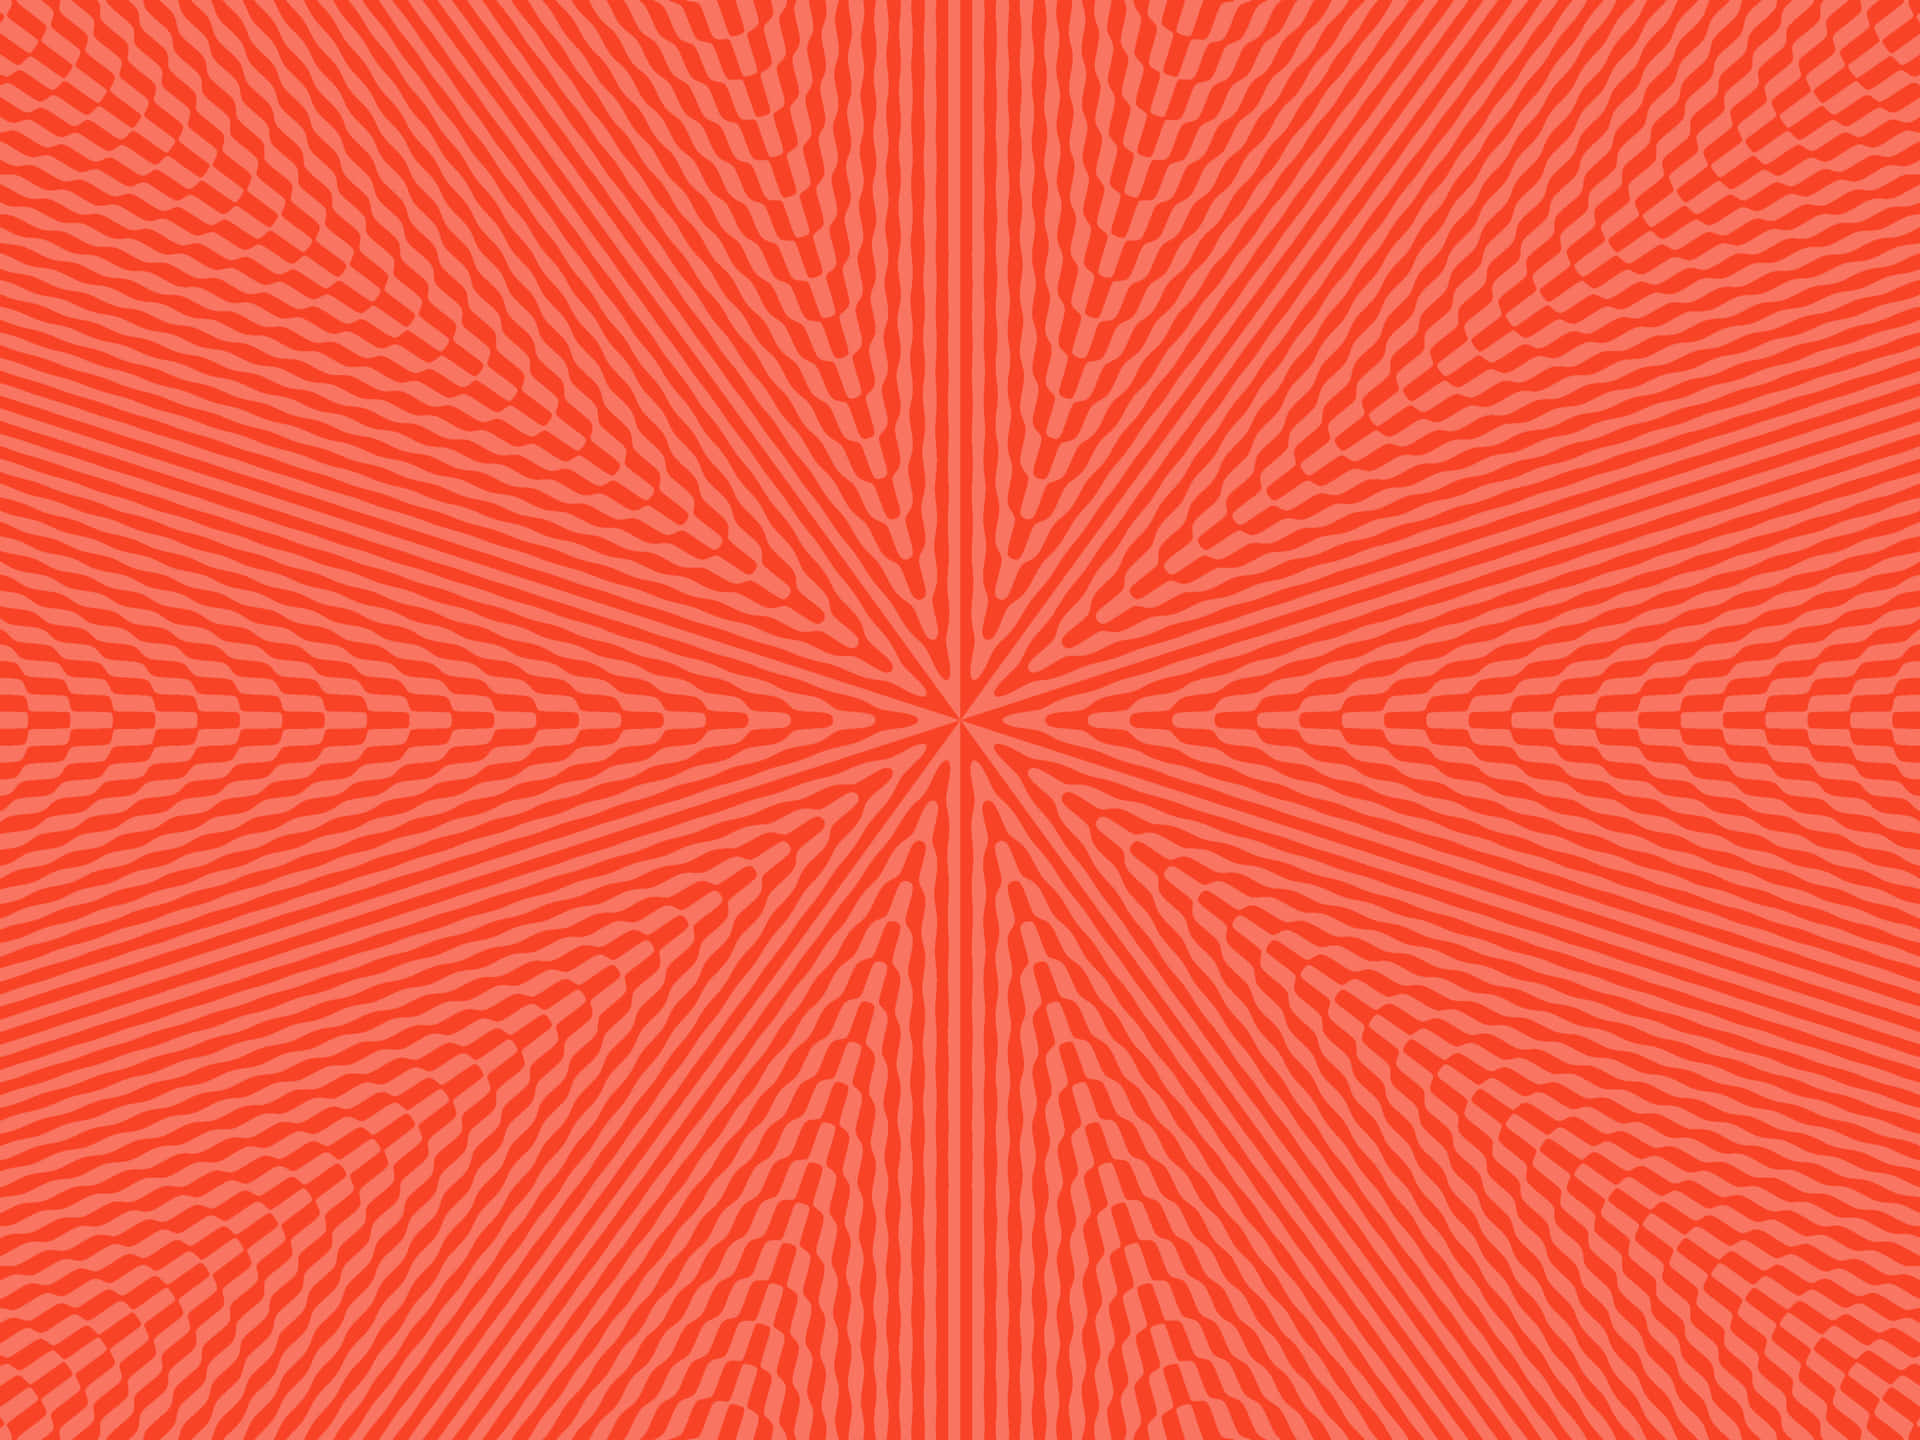 Lyserød og orange farve bryder gennem et hvidt baggrund. Wallpaper